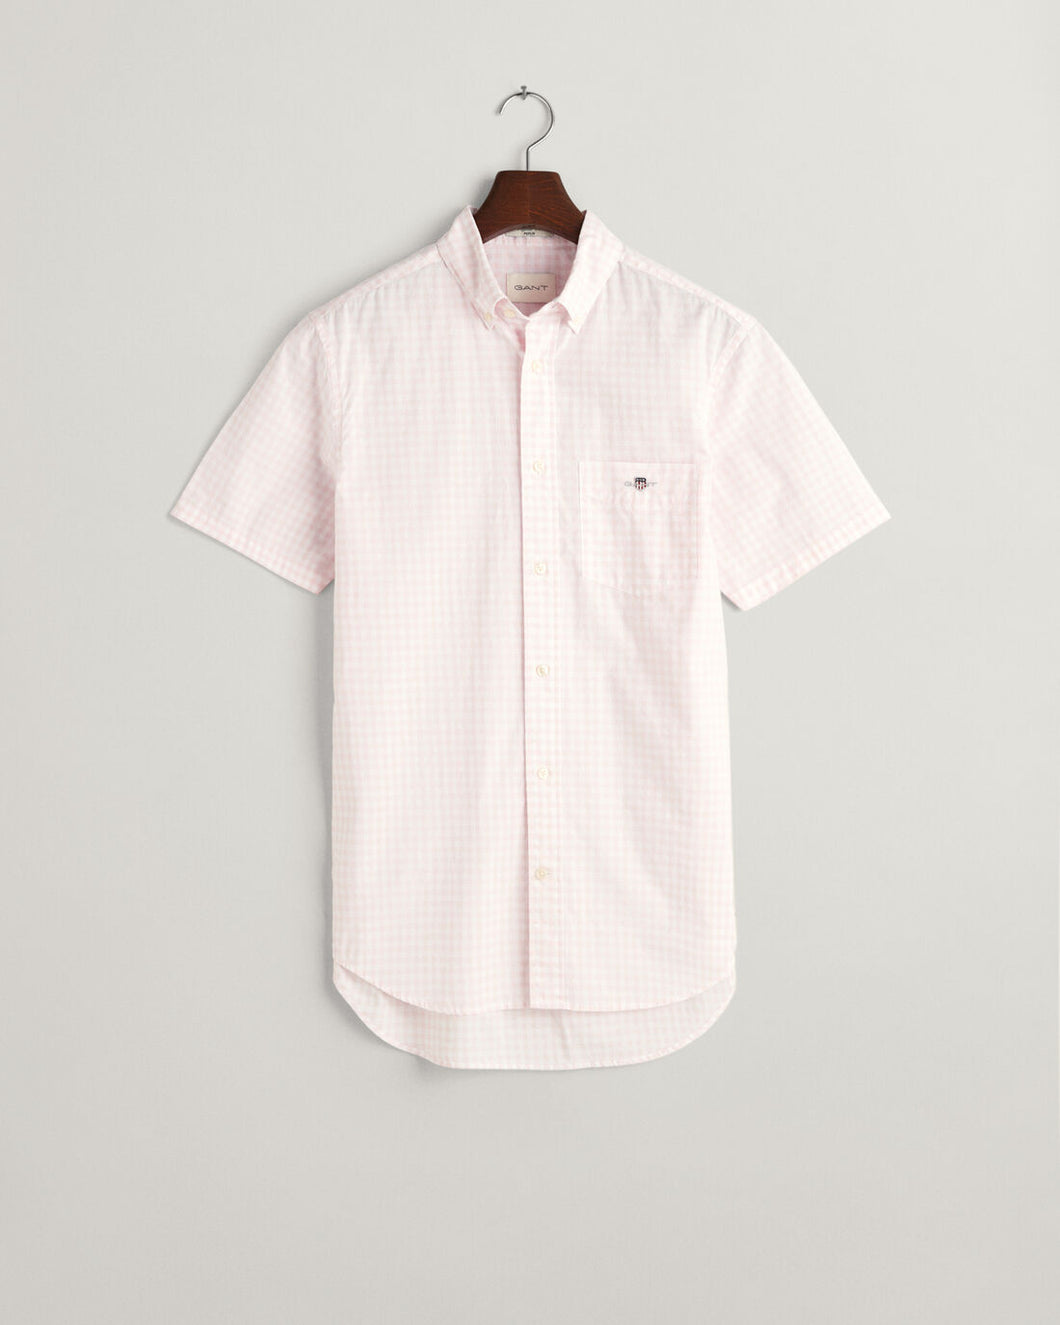 GANT - Poplin Short Sleeve Shirt, Ligtht Pink